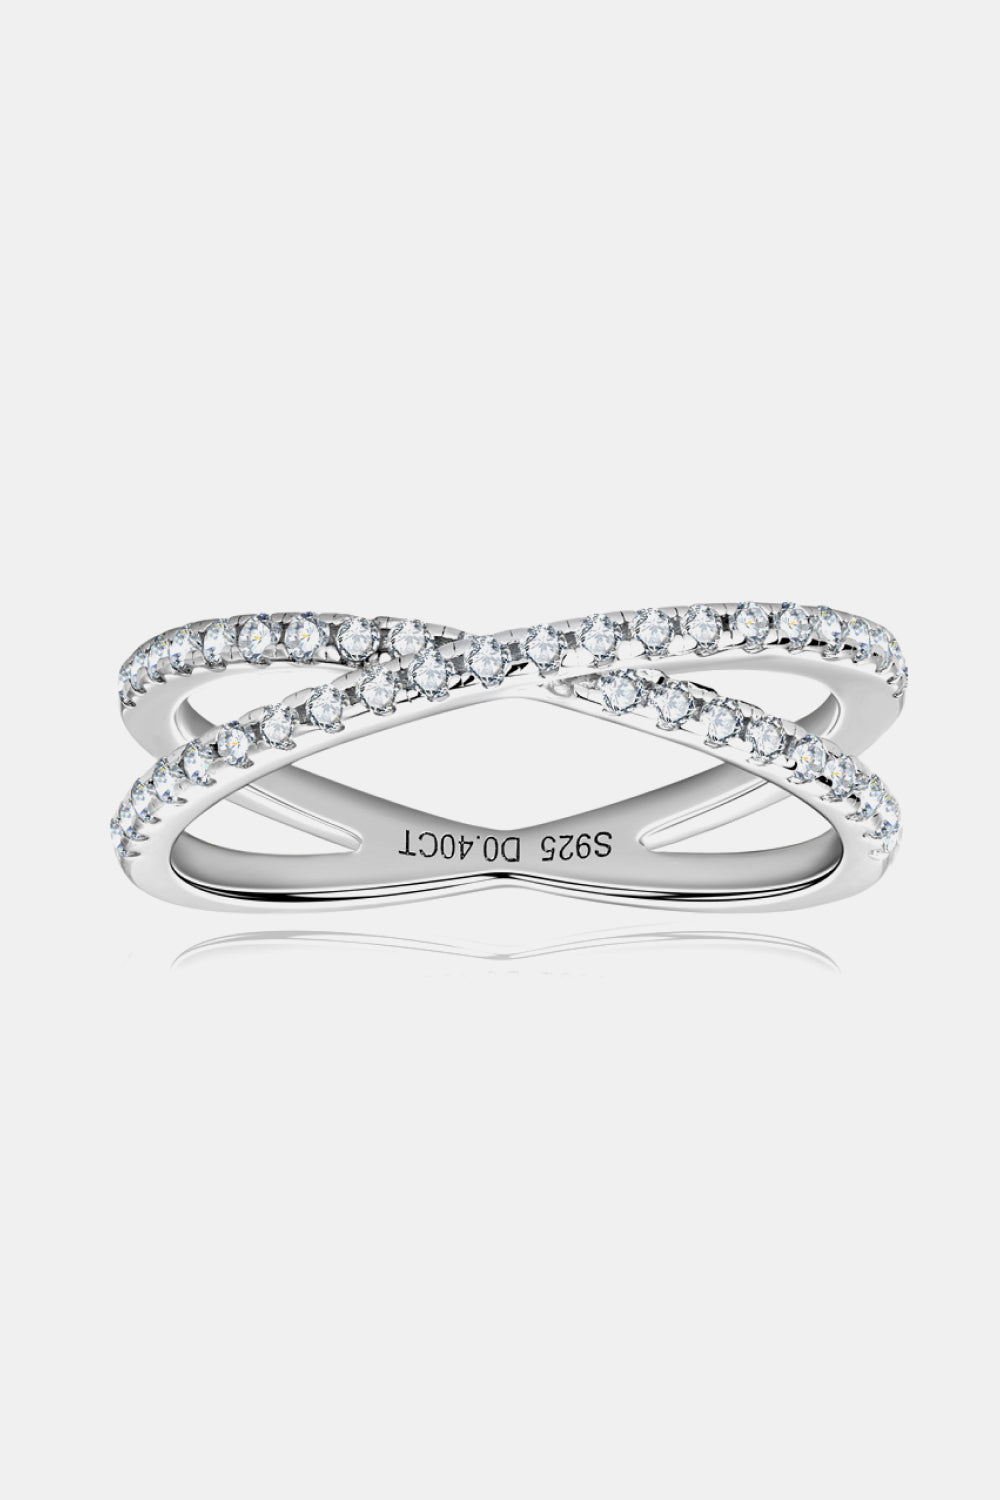 Moissanite 925 Sterling Silver Crisscross Ring